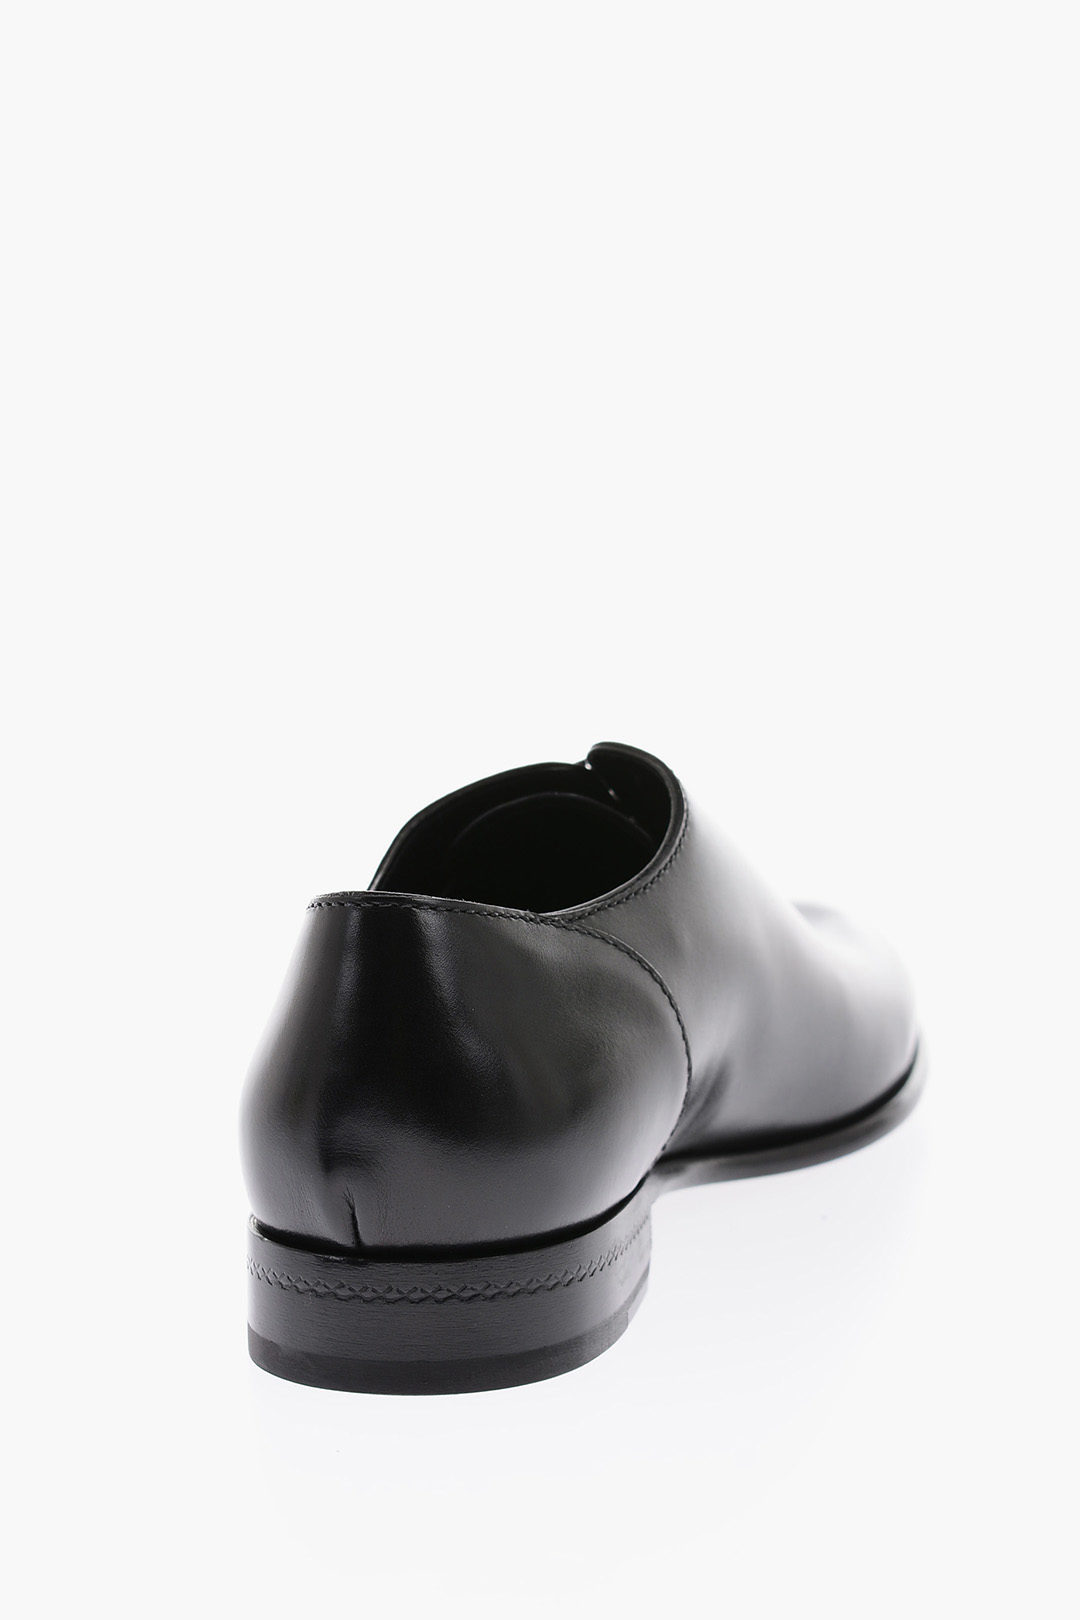 Ermenegildo Zegna Shoe 100% Calf leather - Cuccalofferta